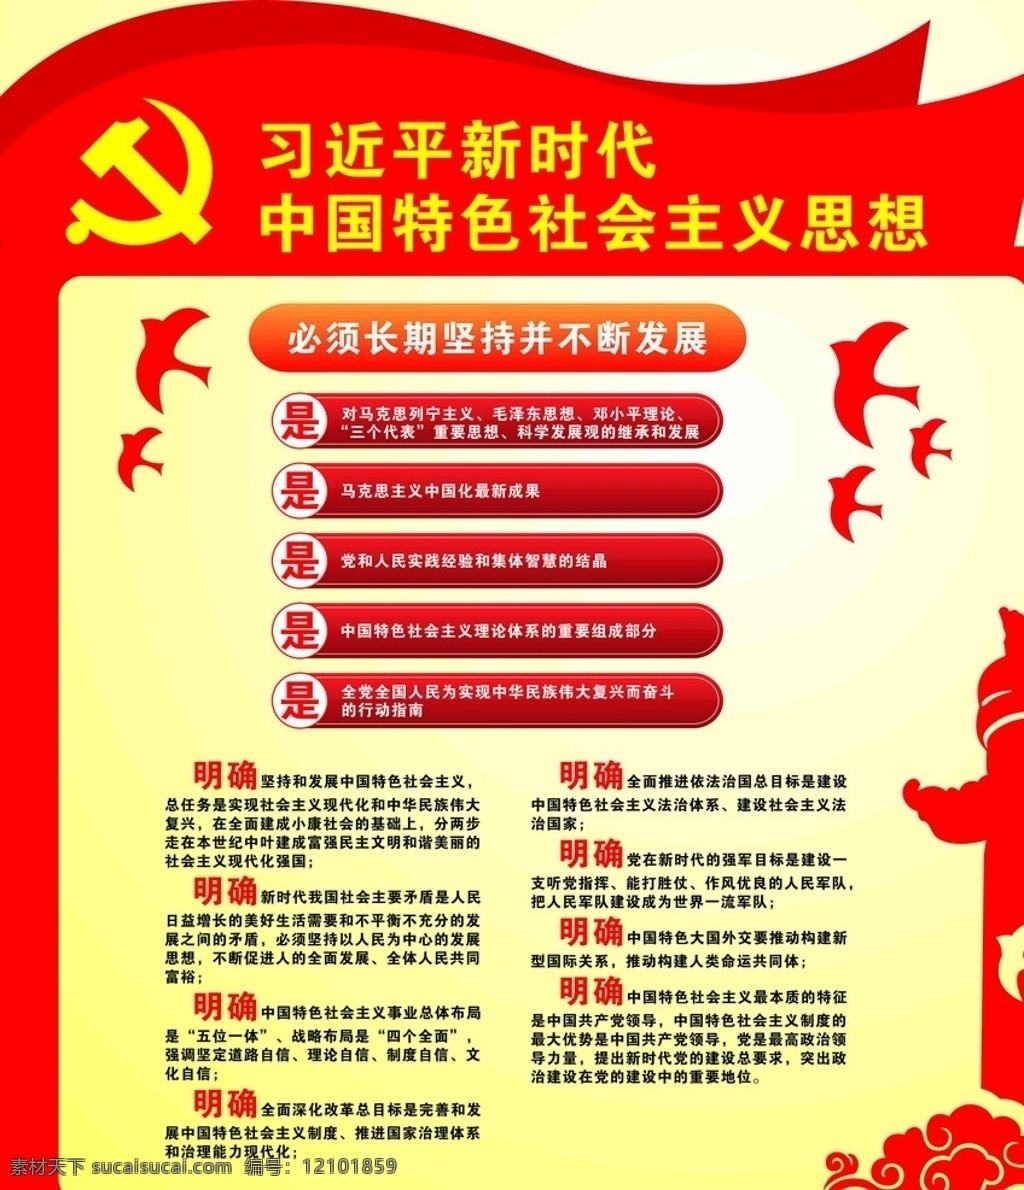 新时代 中国 特色 社会主义 社会 主义